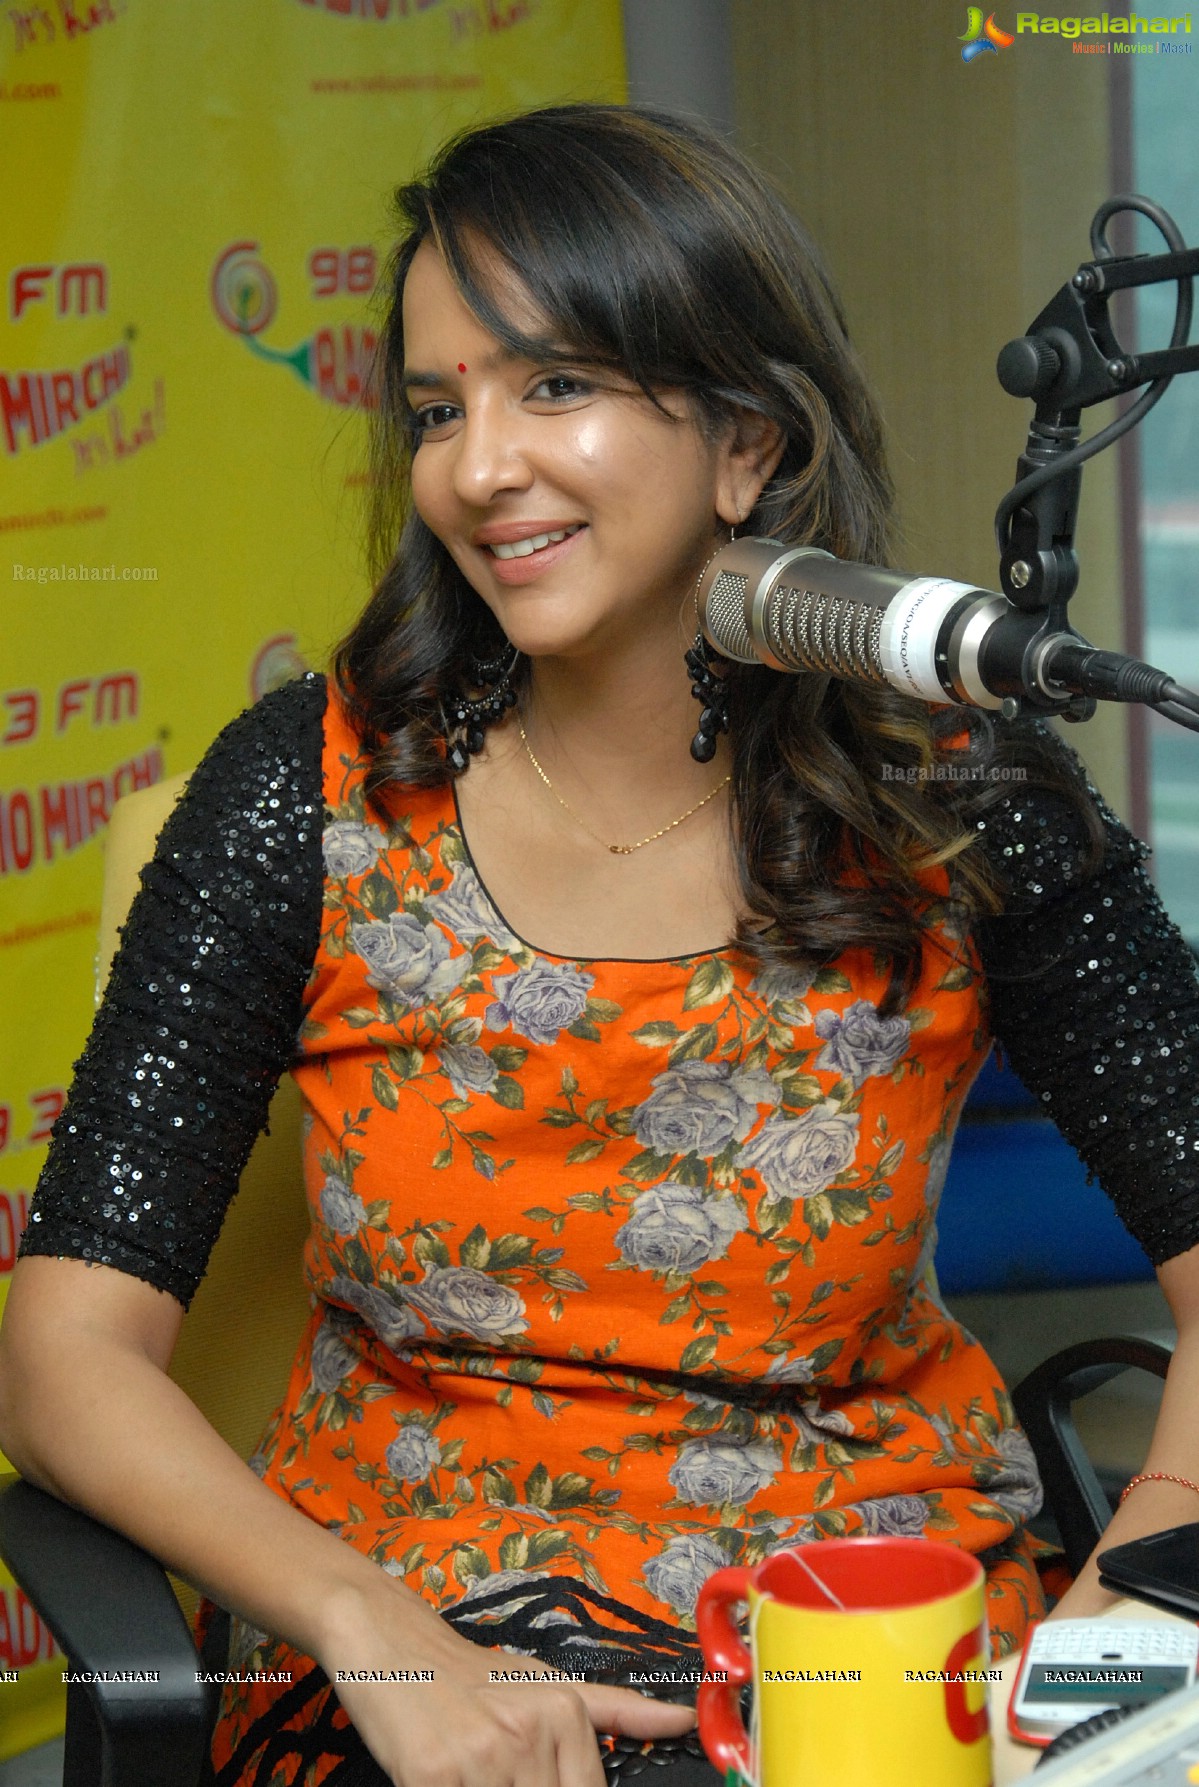 Gundello Godari Promotions at Radio Mirchi, Hyderabad